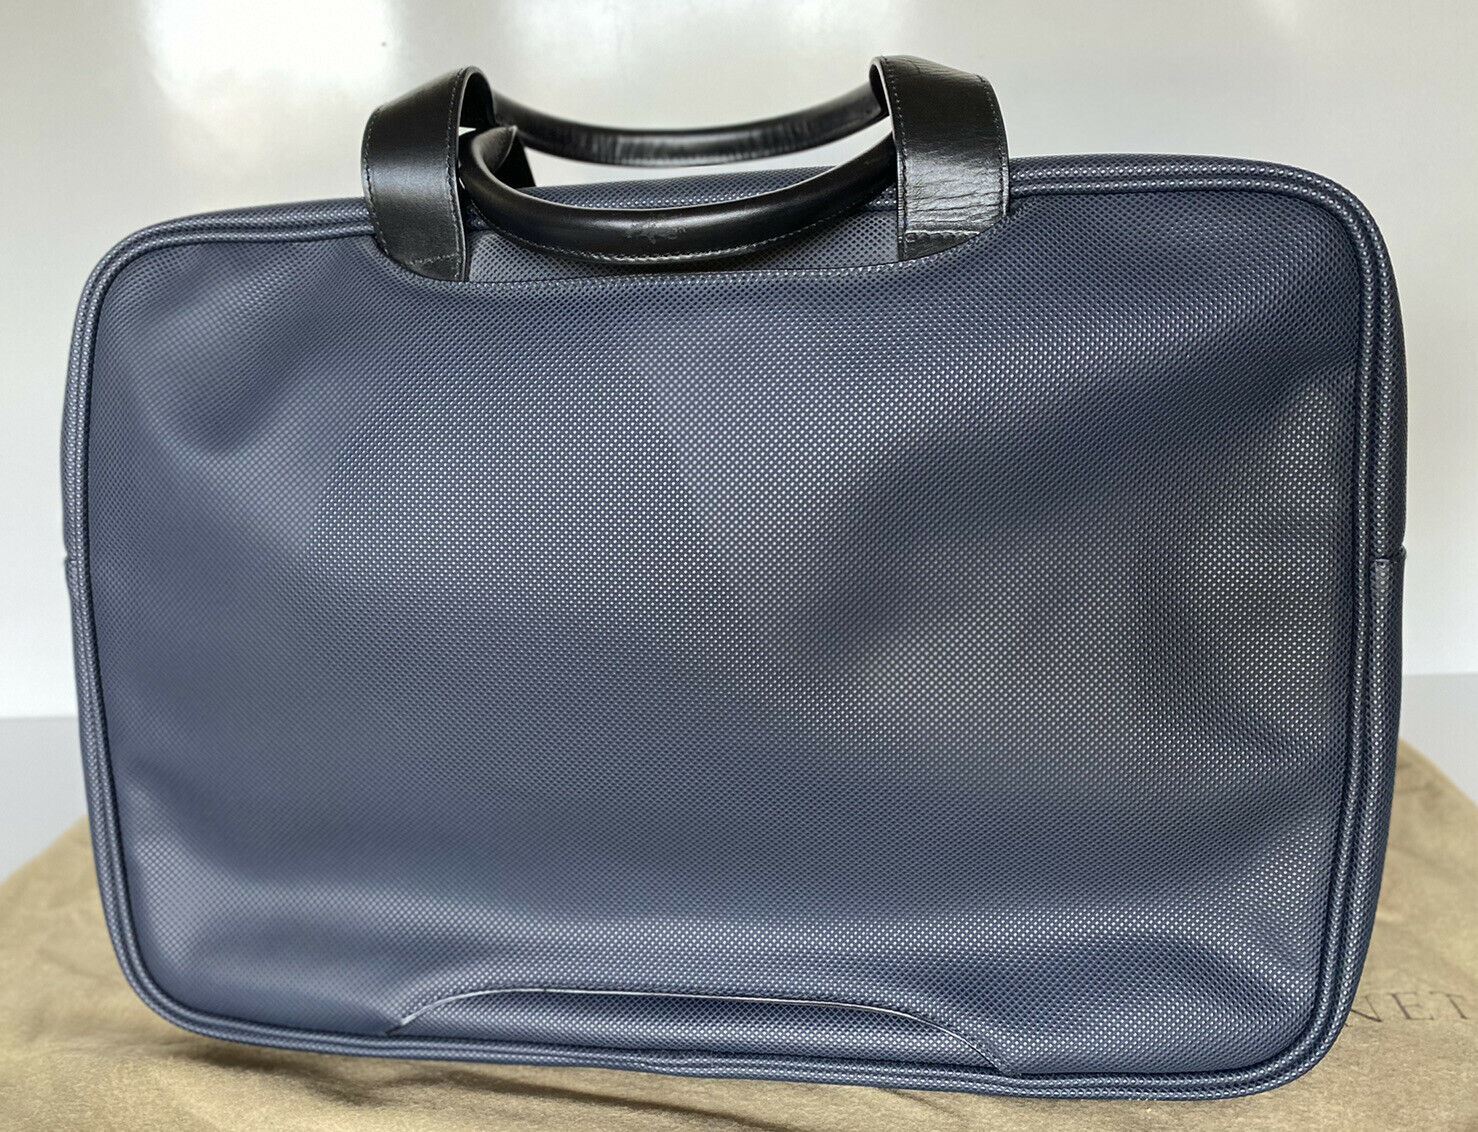 Новая мужская дорожная сумка из темно-синей кожи Marcopolo Bottega Veneta стоимостью 1450 долларов США 167304 